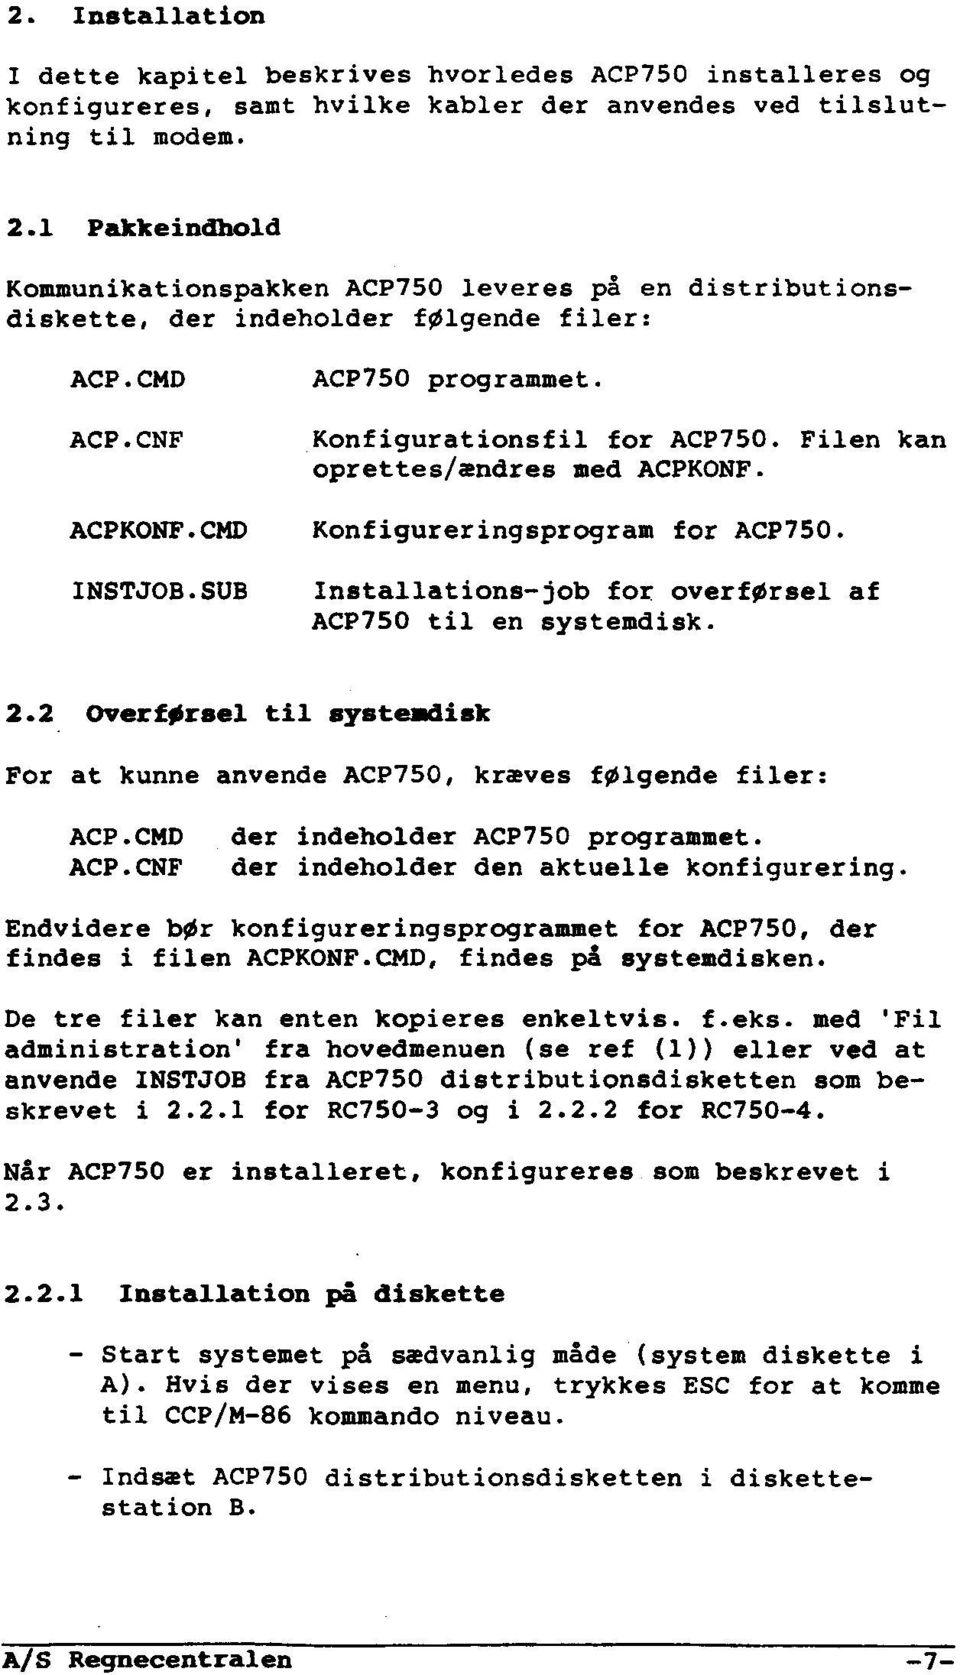 Filen kan oprettes/ændres med ACPKQNF. ACPKONF.CMD Konfigureringsprogram for ACP750. INSTJOB.SUB Installations-job for overførsel af ACP750 til en systemdisk. 2.